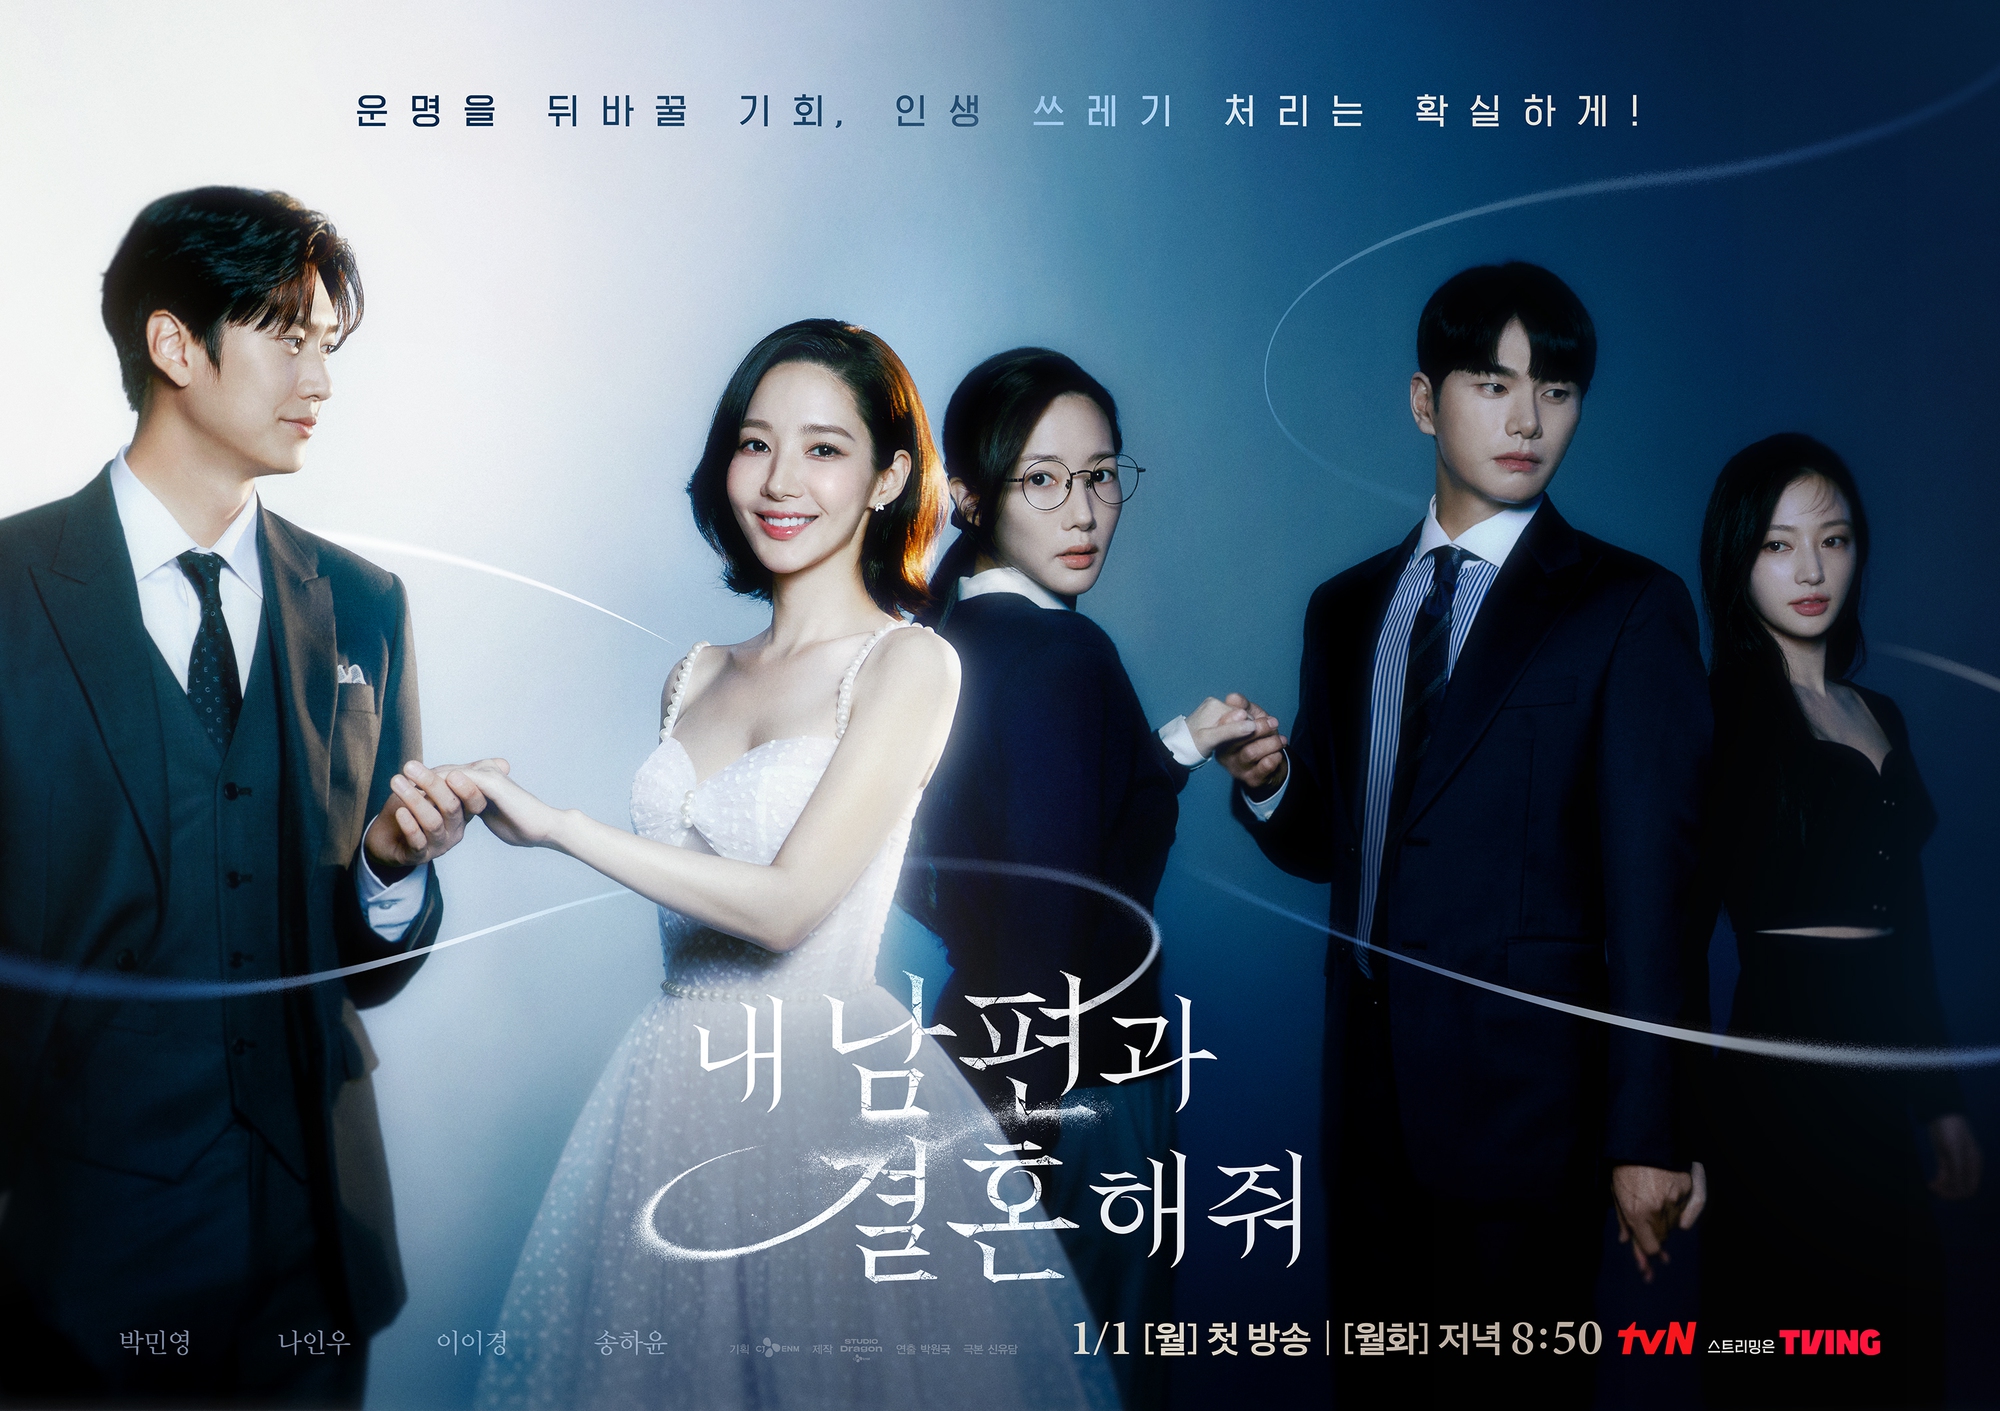 Phim của Park Min Young vừa chiếu đã được khen quá xuất sắc, rating chiếm top 1 toàn quốc ngày đầu năm - Ảnh 1.